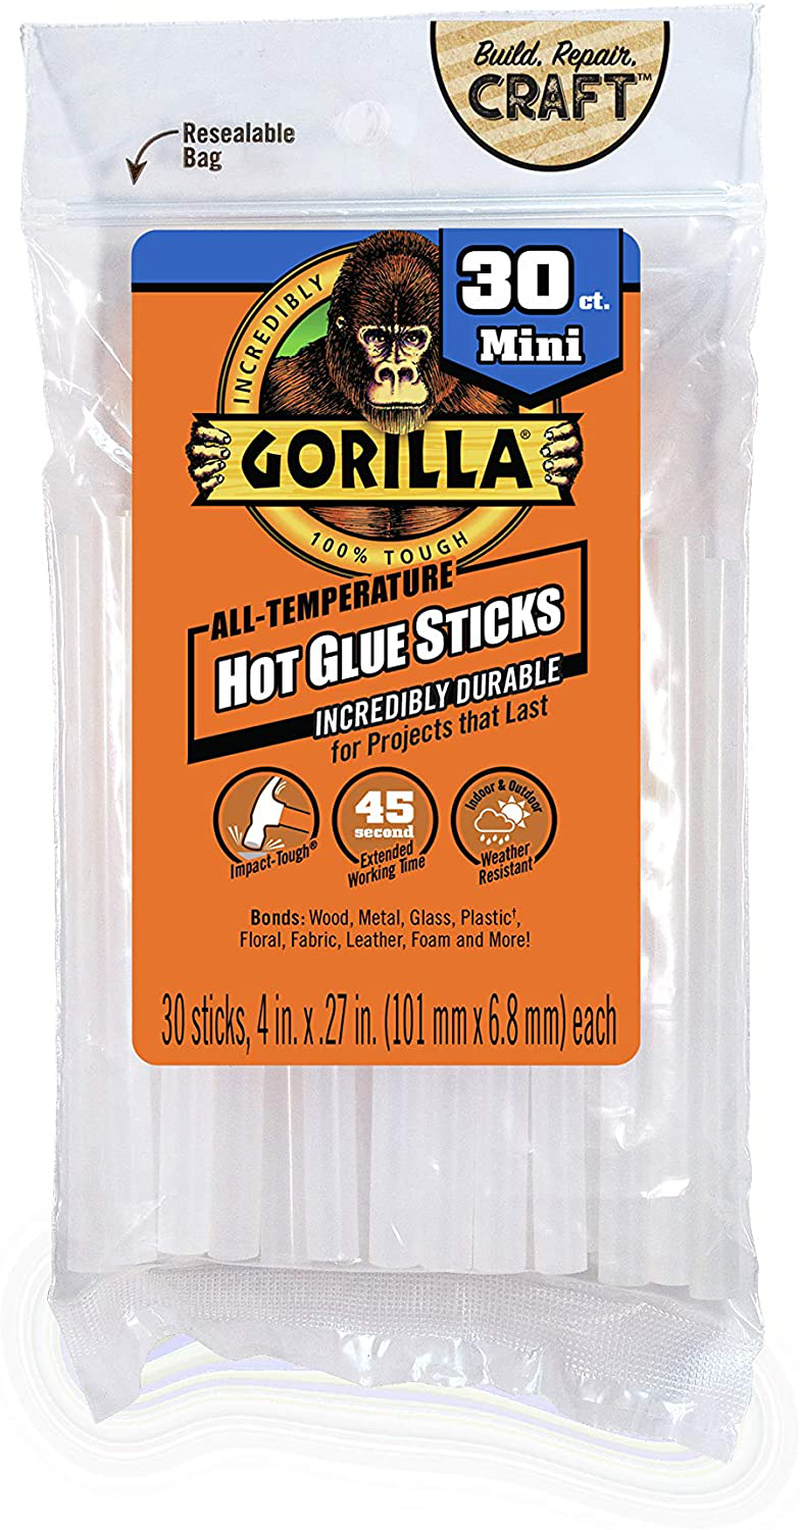 Gorilla Dual Temp Mini Hot Glue Gun Kit with 75 Hot Glue Sticks, (Pack of 1)